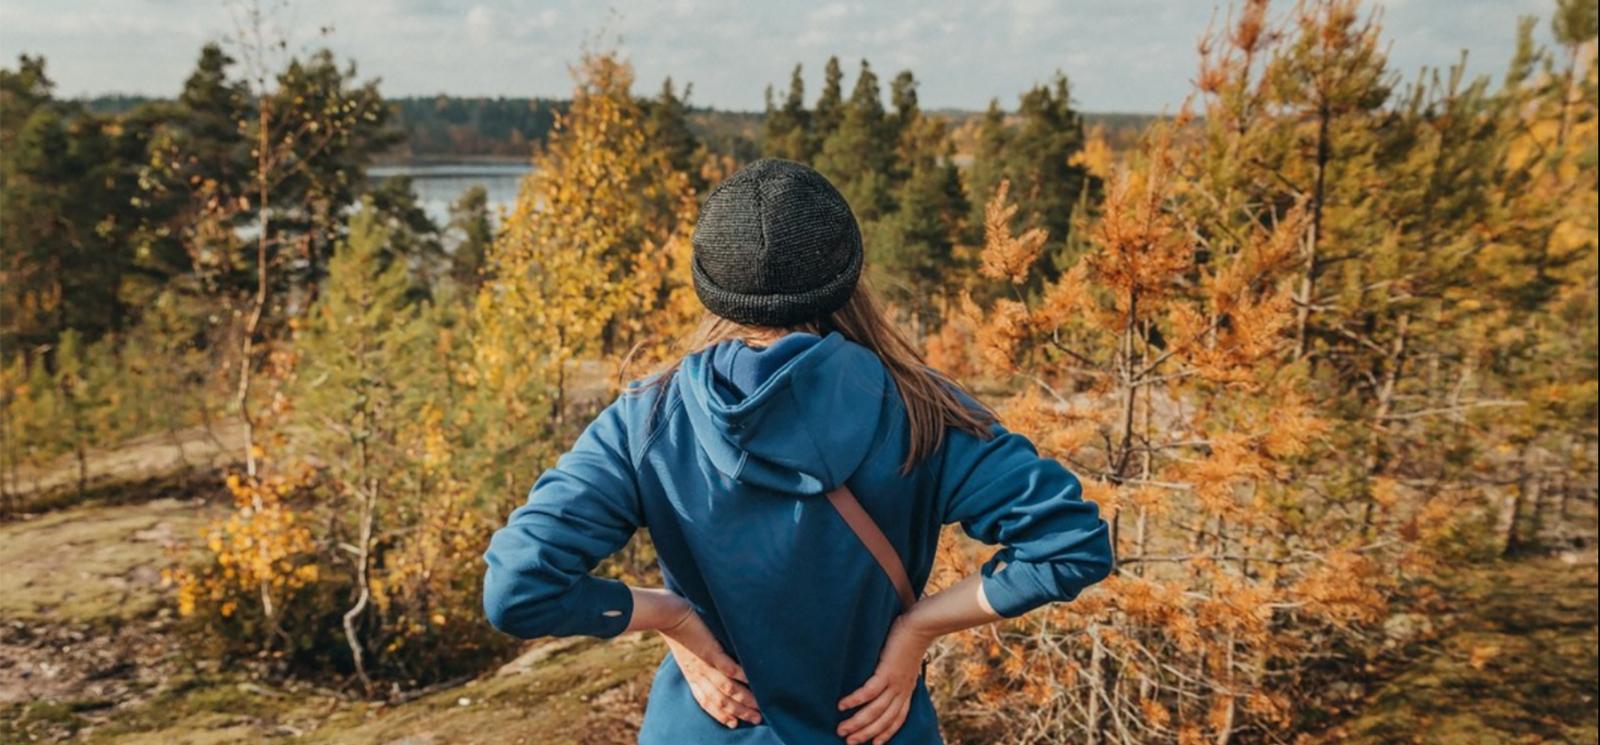 Una mujer en una caminata haciendo una pausa para contemplar el paisaje otoñal (Instagram@baymontinngroton)